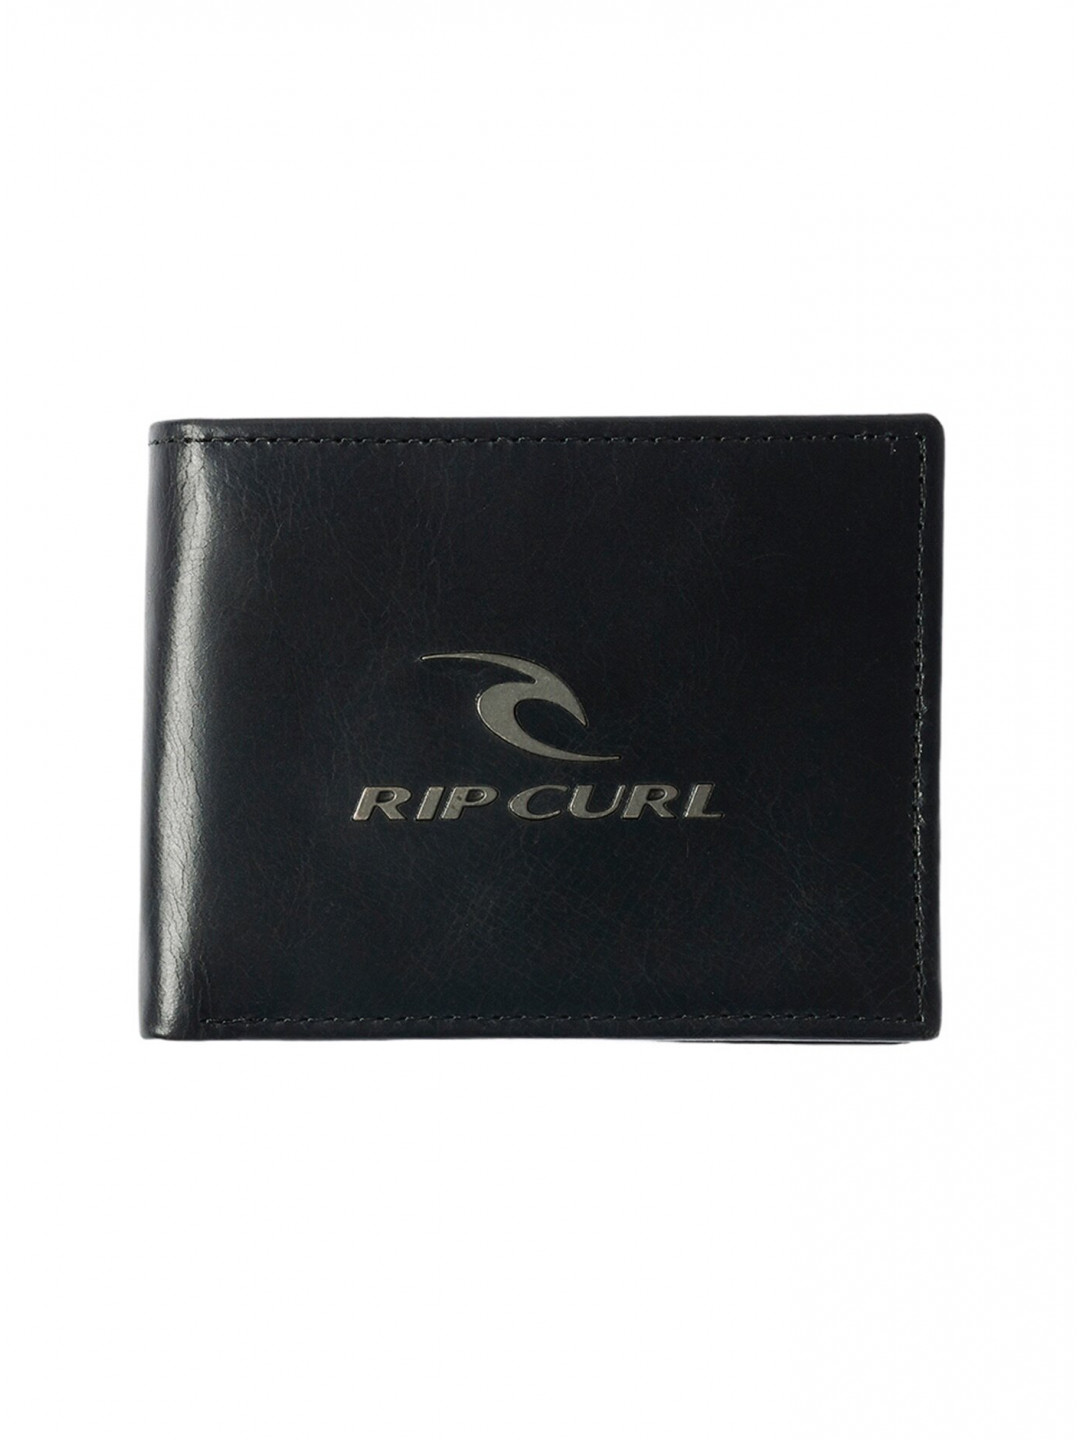 Rip curl peněženka Corpowatu Rfid 2 In 1 Black Černá Velikost One Size